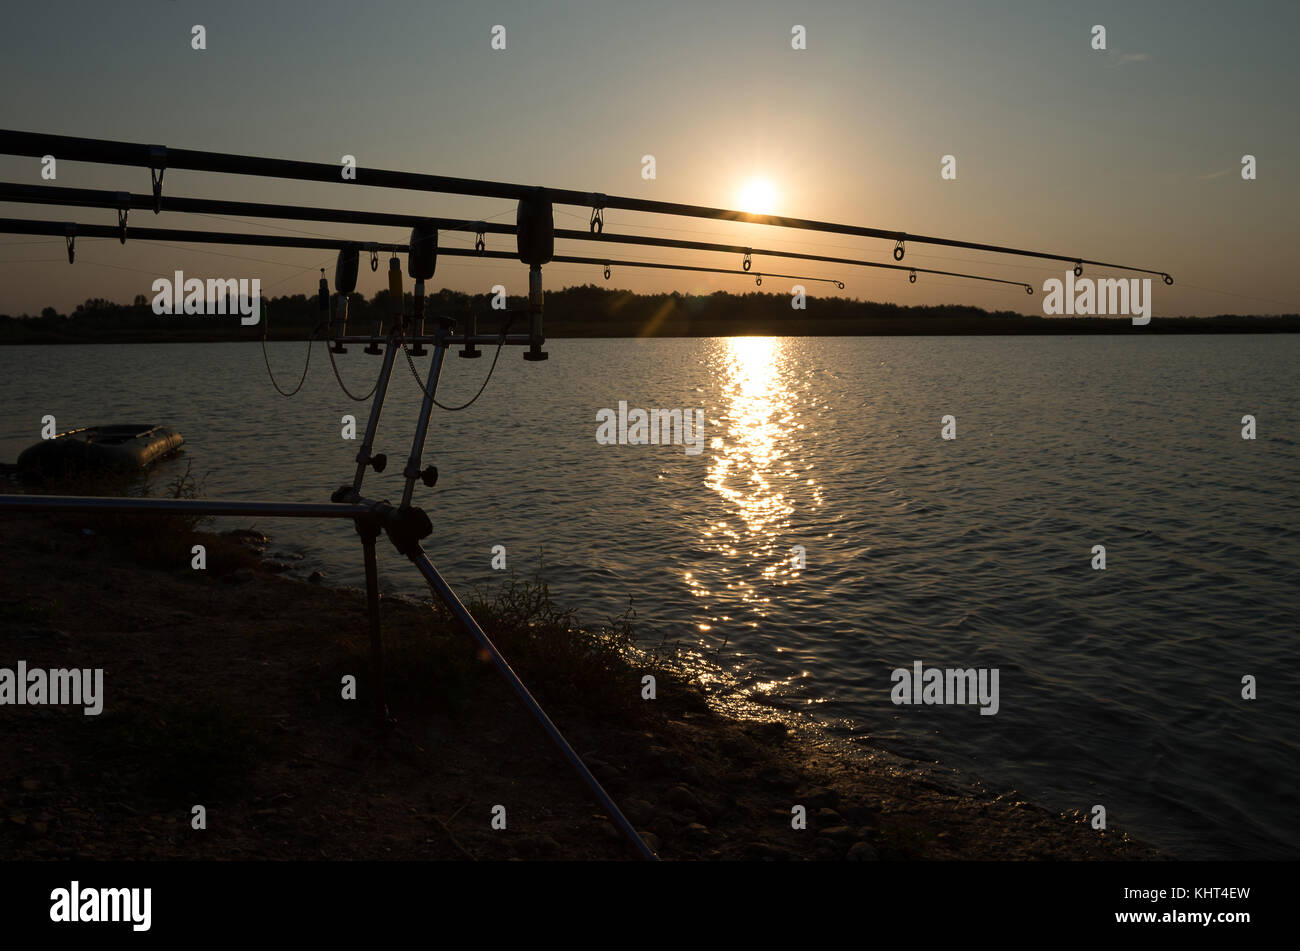 Carp Fishing, Scenery. Stock Photo